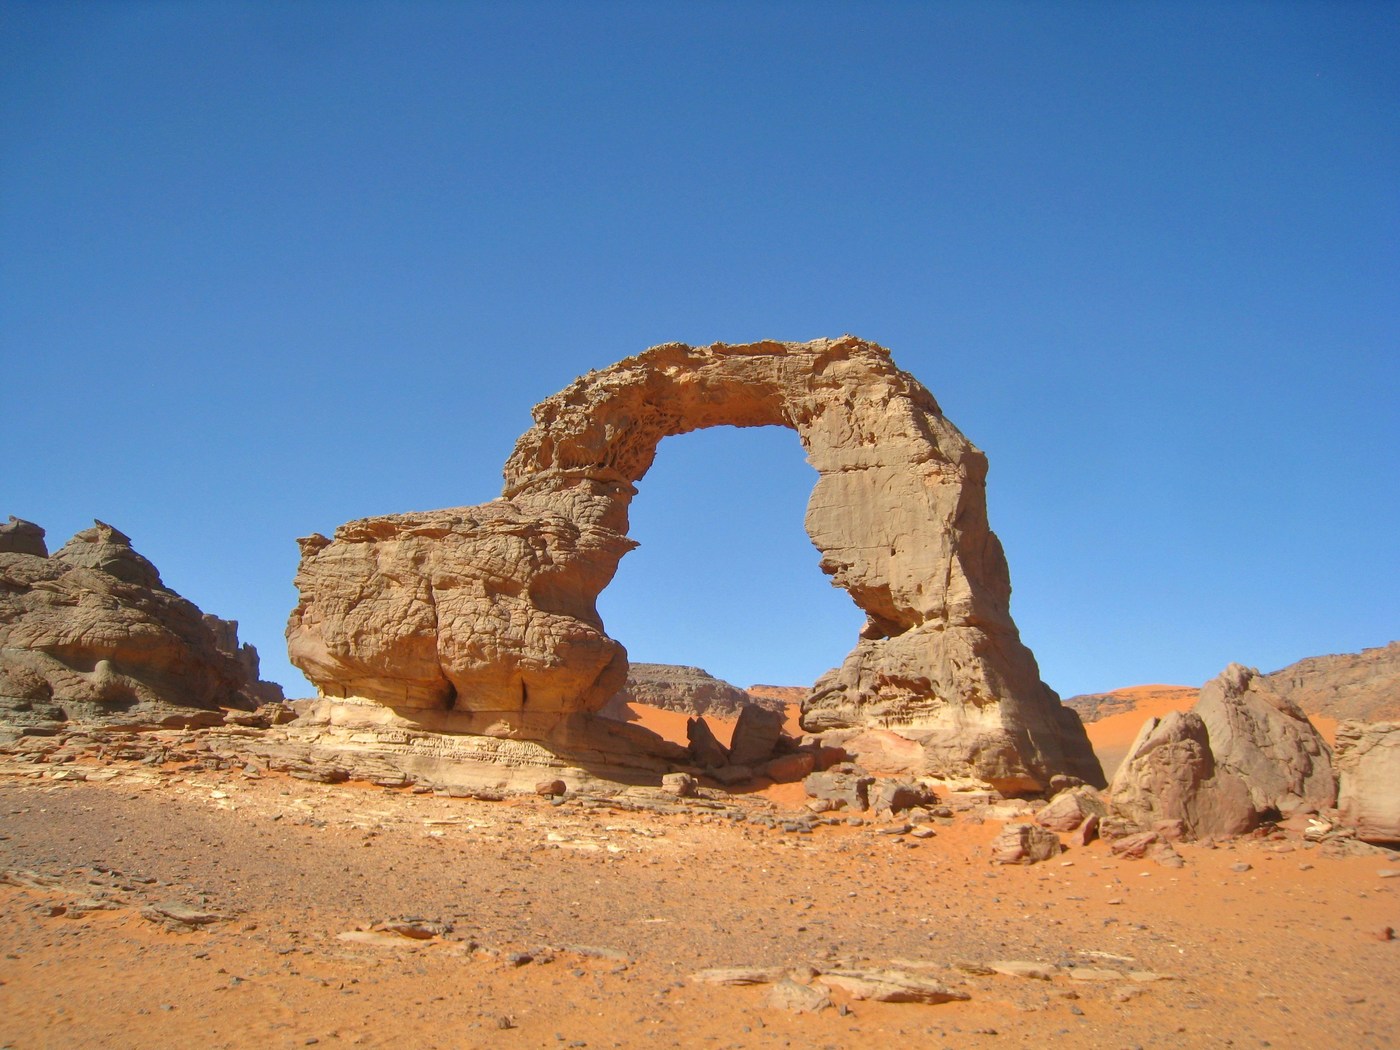 Fotografía tomada en el Saharay, en la meseta montañosa de Thadrat, en el sureste de Argelia.